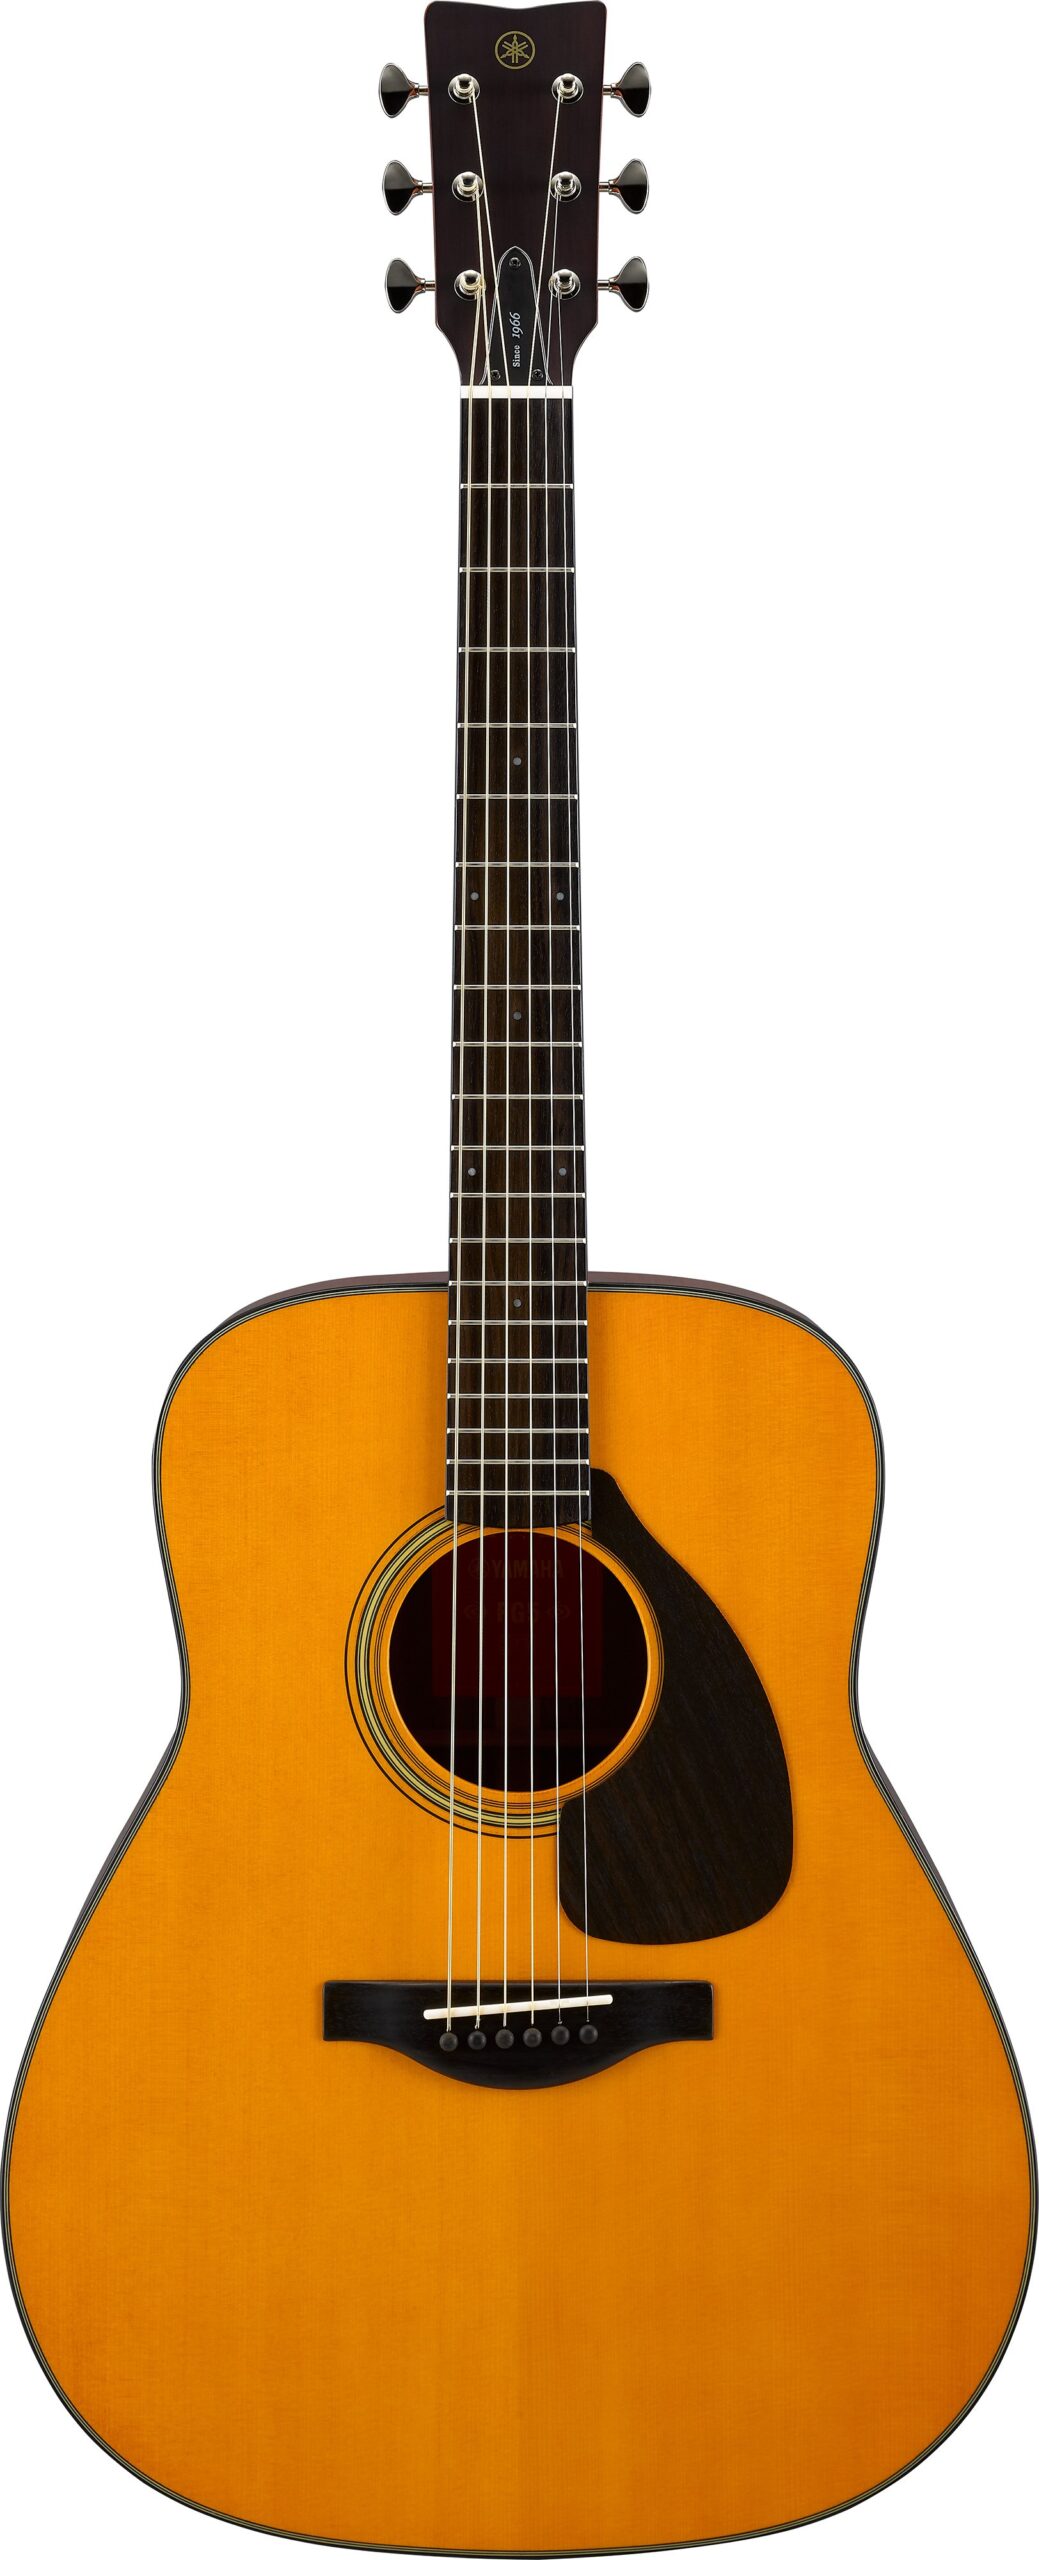 FG5 – Acoustic Guitar